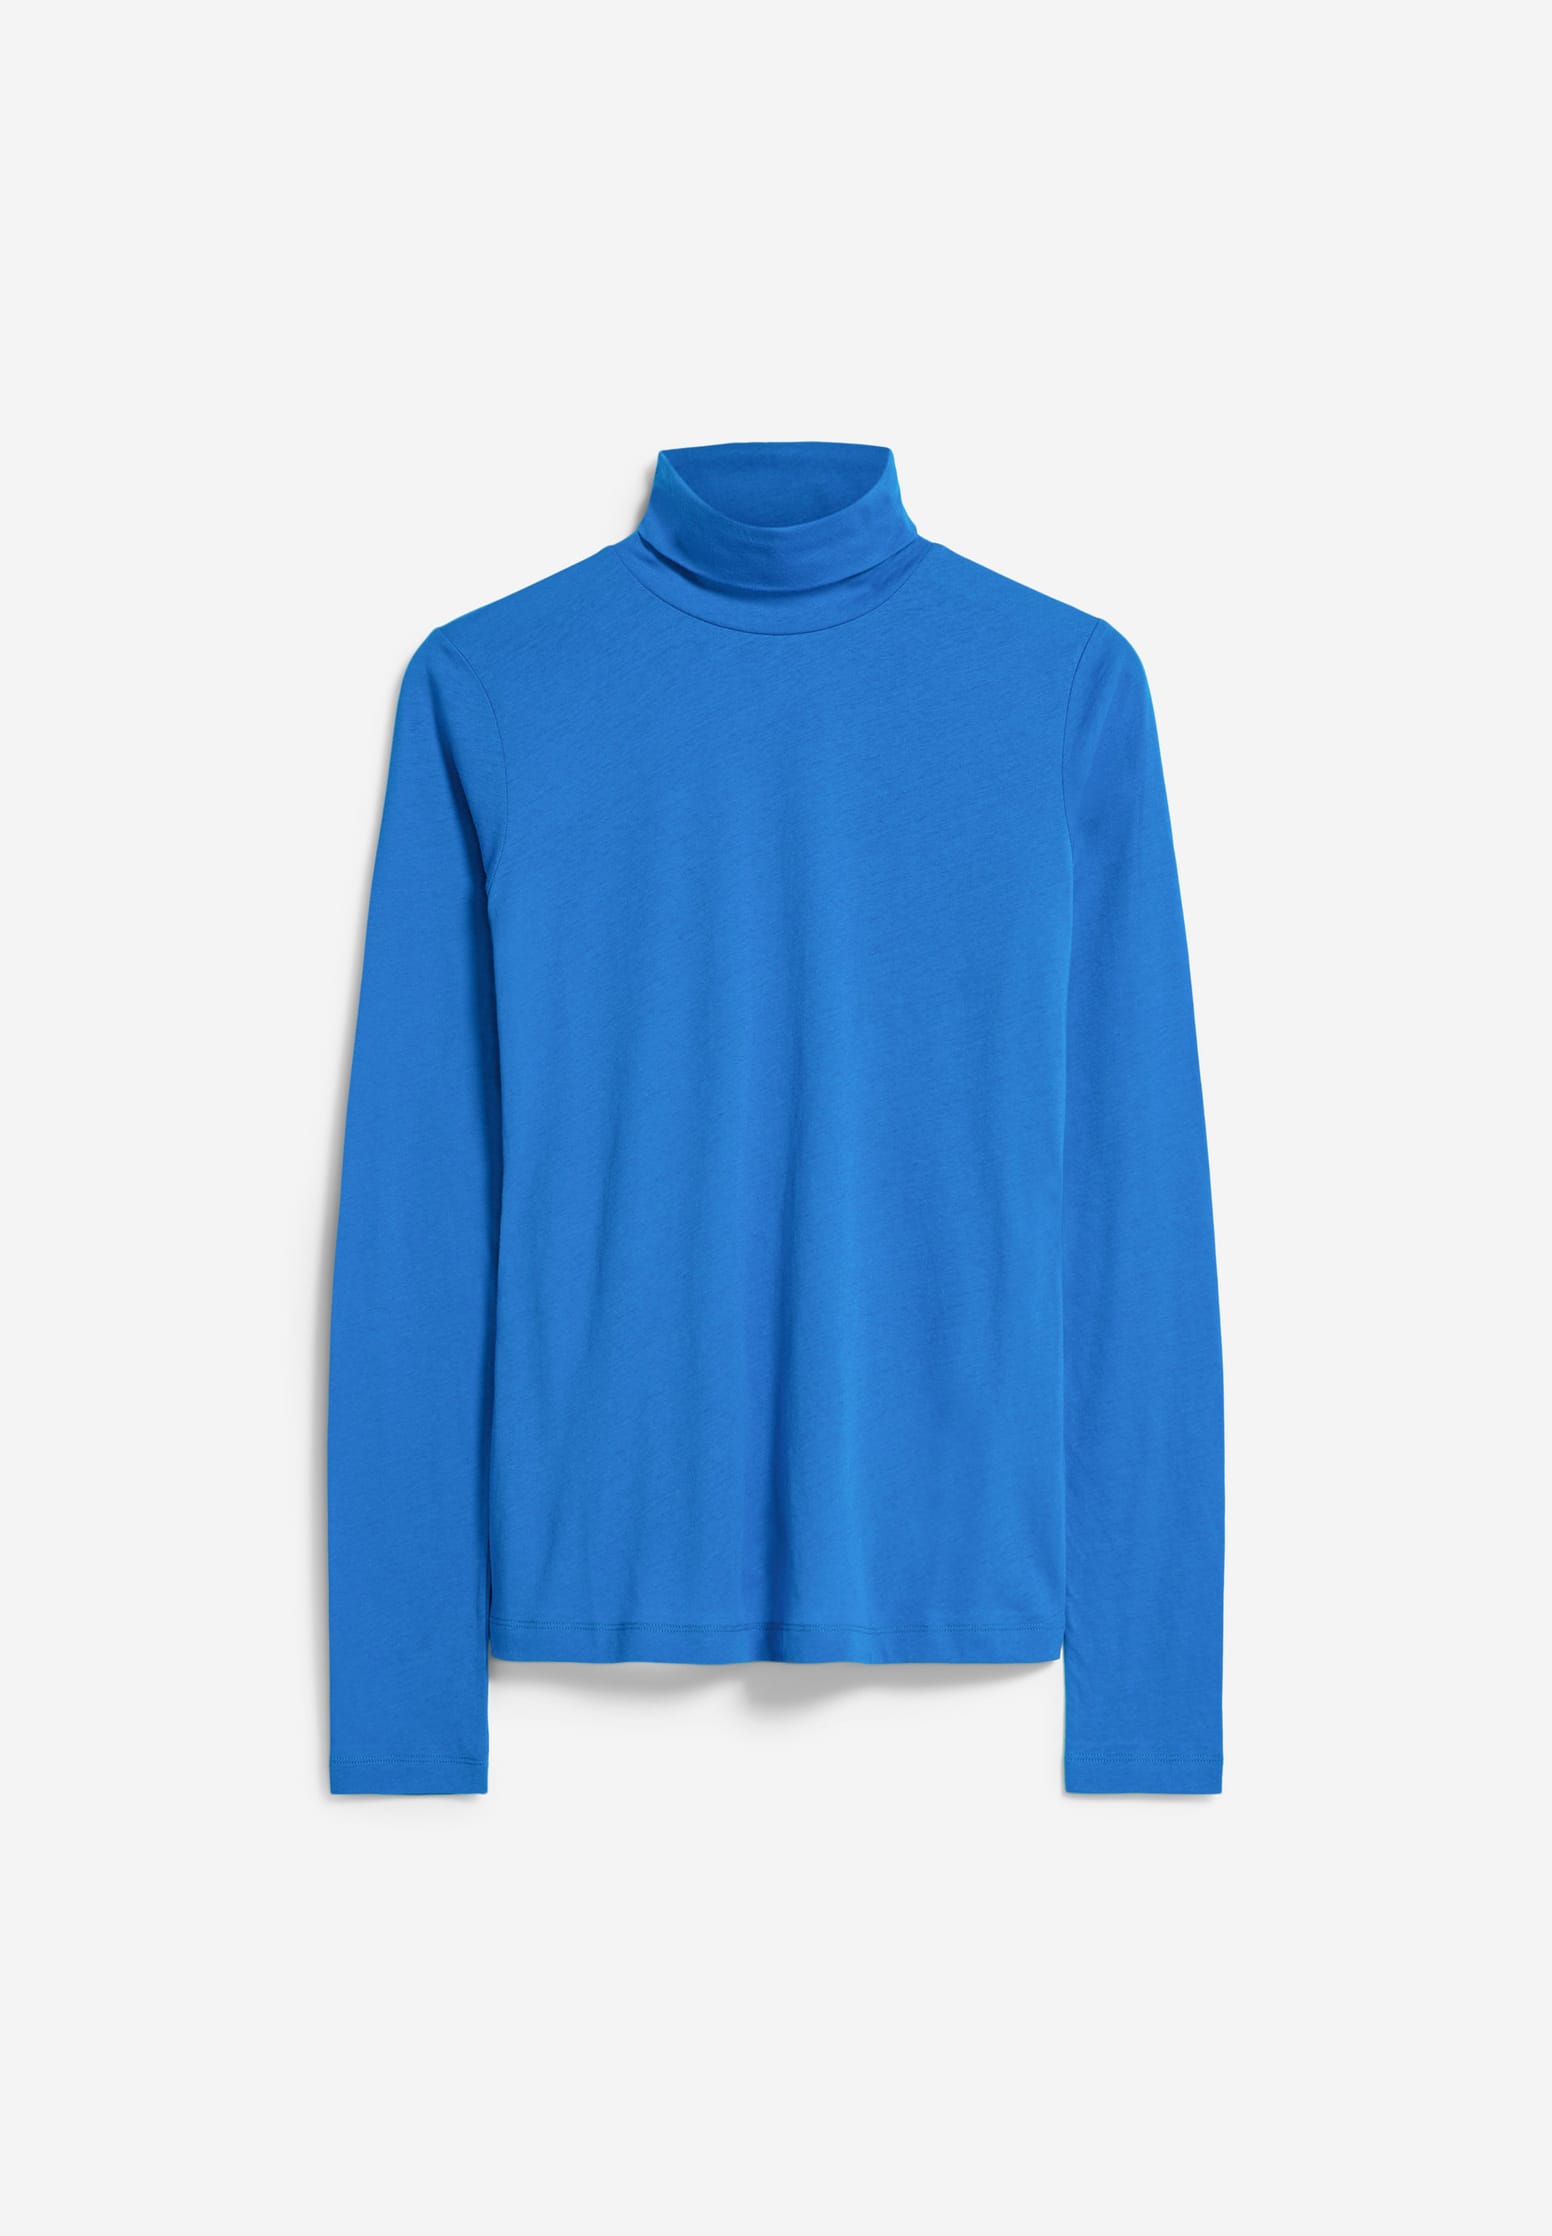 GRAZILIAA SOFT – Longsleeve Slim Fit aus Bio-Baumwolle in warm blue